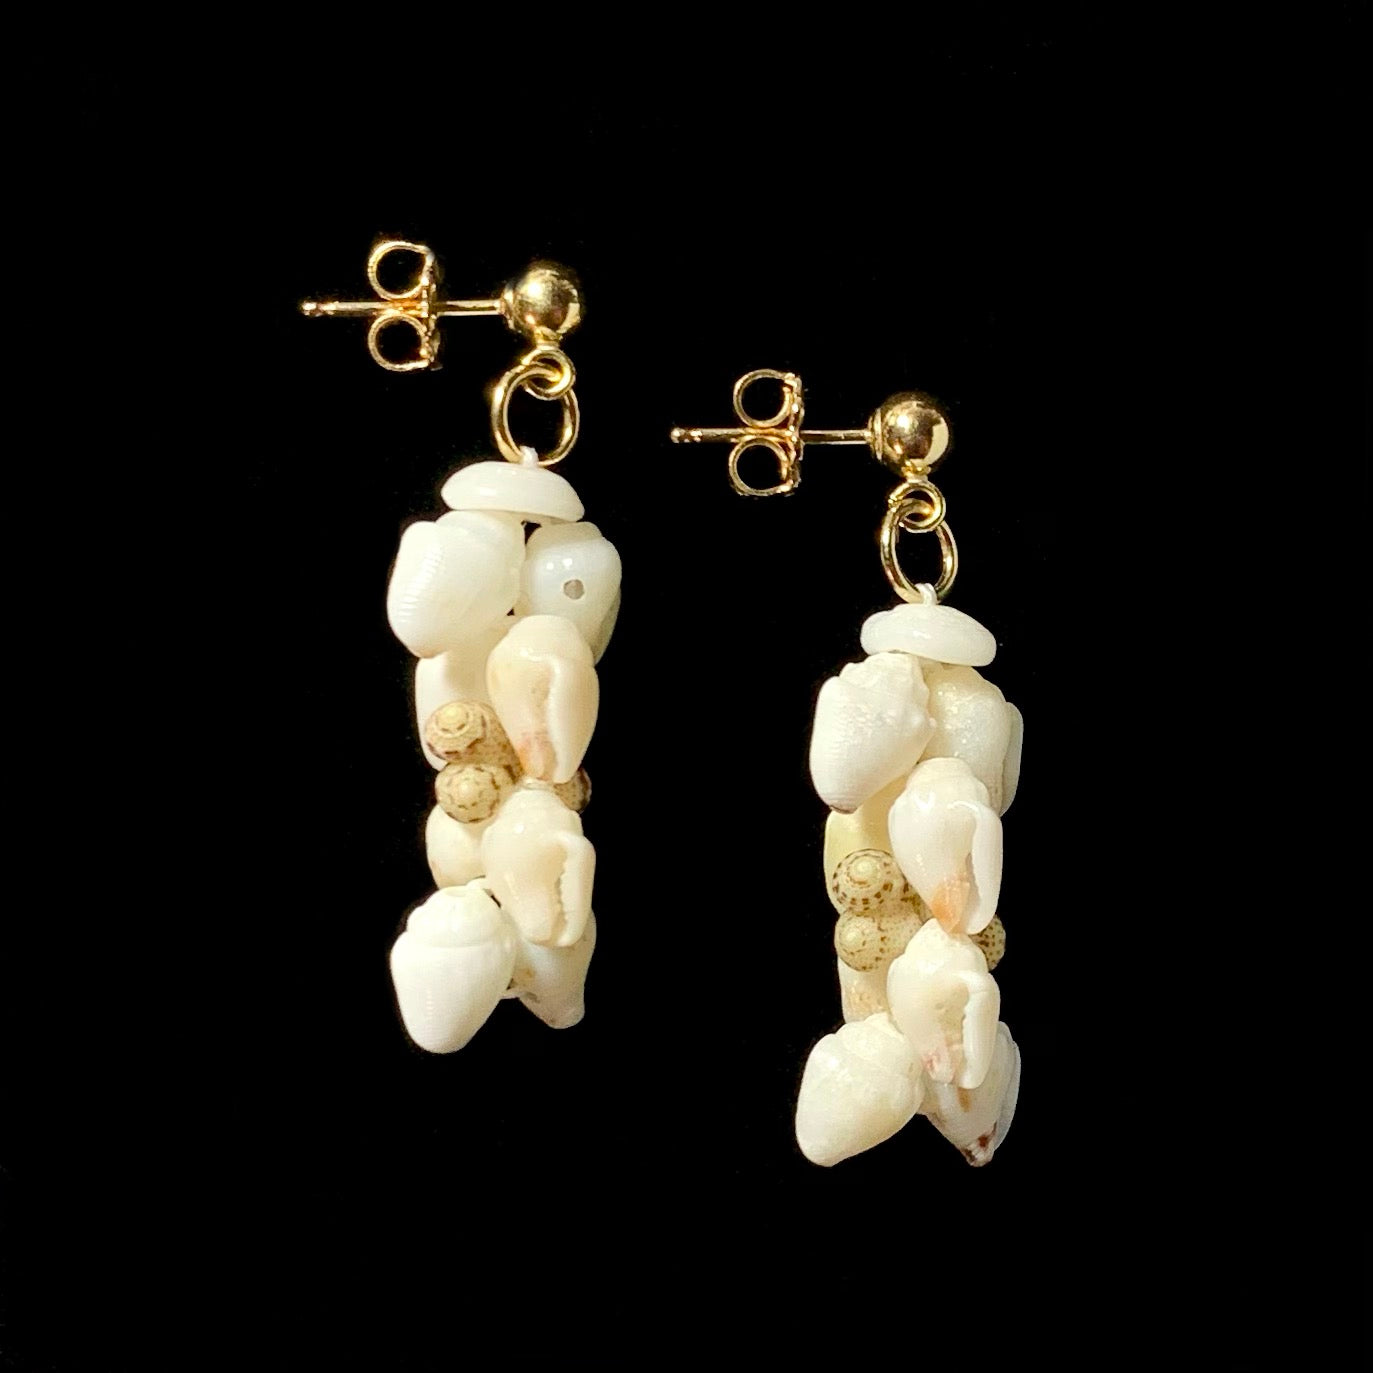 1-inch Kipona Style Ni’ihau Shell Earrings - ‘Oma’oma’o